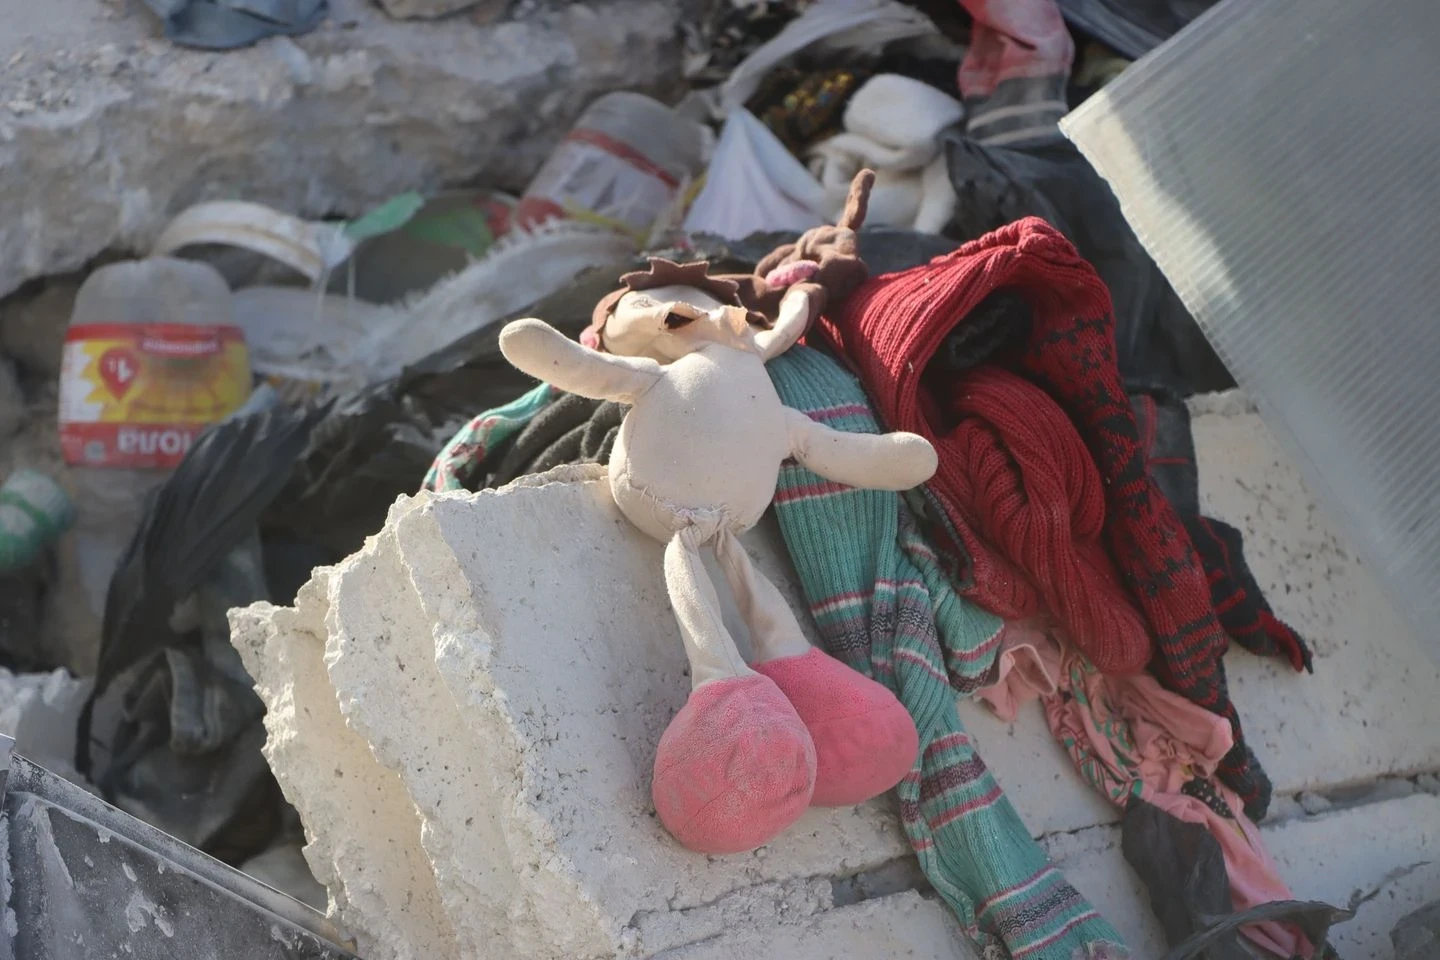 قُتل الرضيع ونجت لعبته - قصف صاروخي لقوات النظام مساء السبت 2 أيلول على سرمين بريف إدلب الشرقي - الخوذ البيضاء